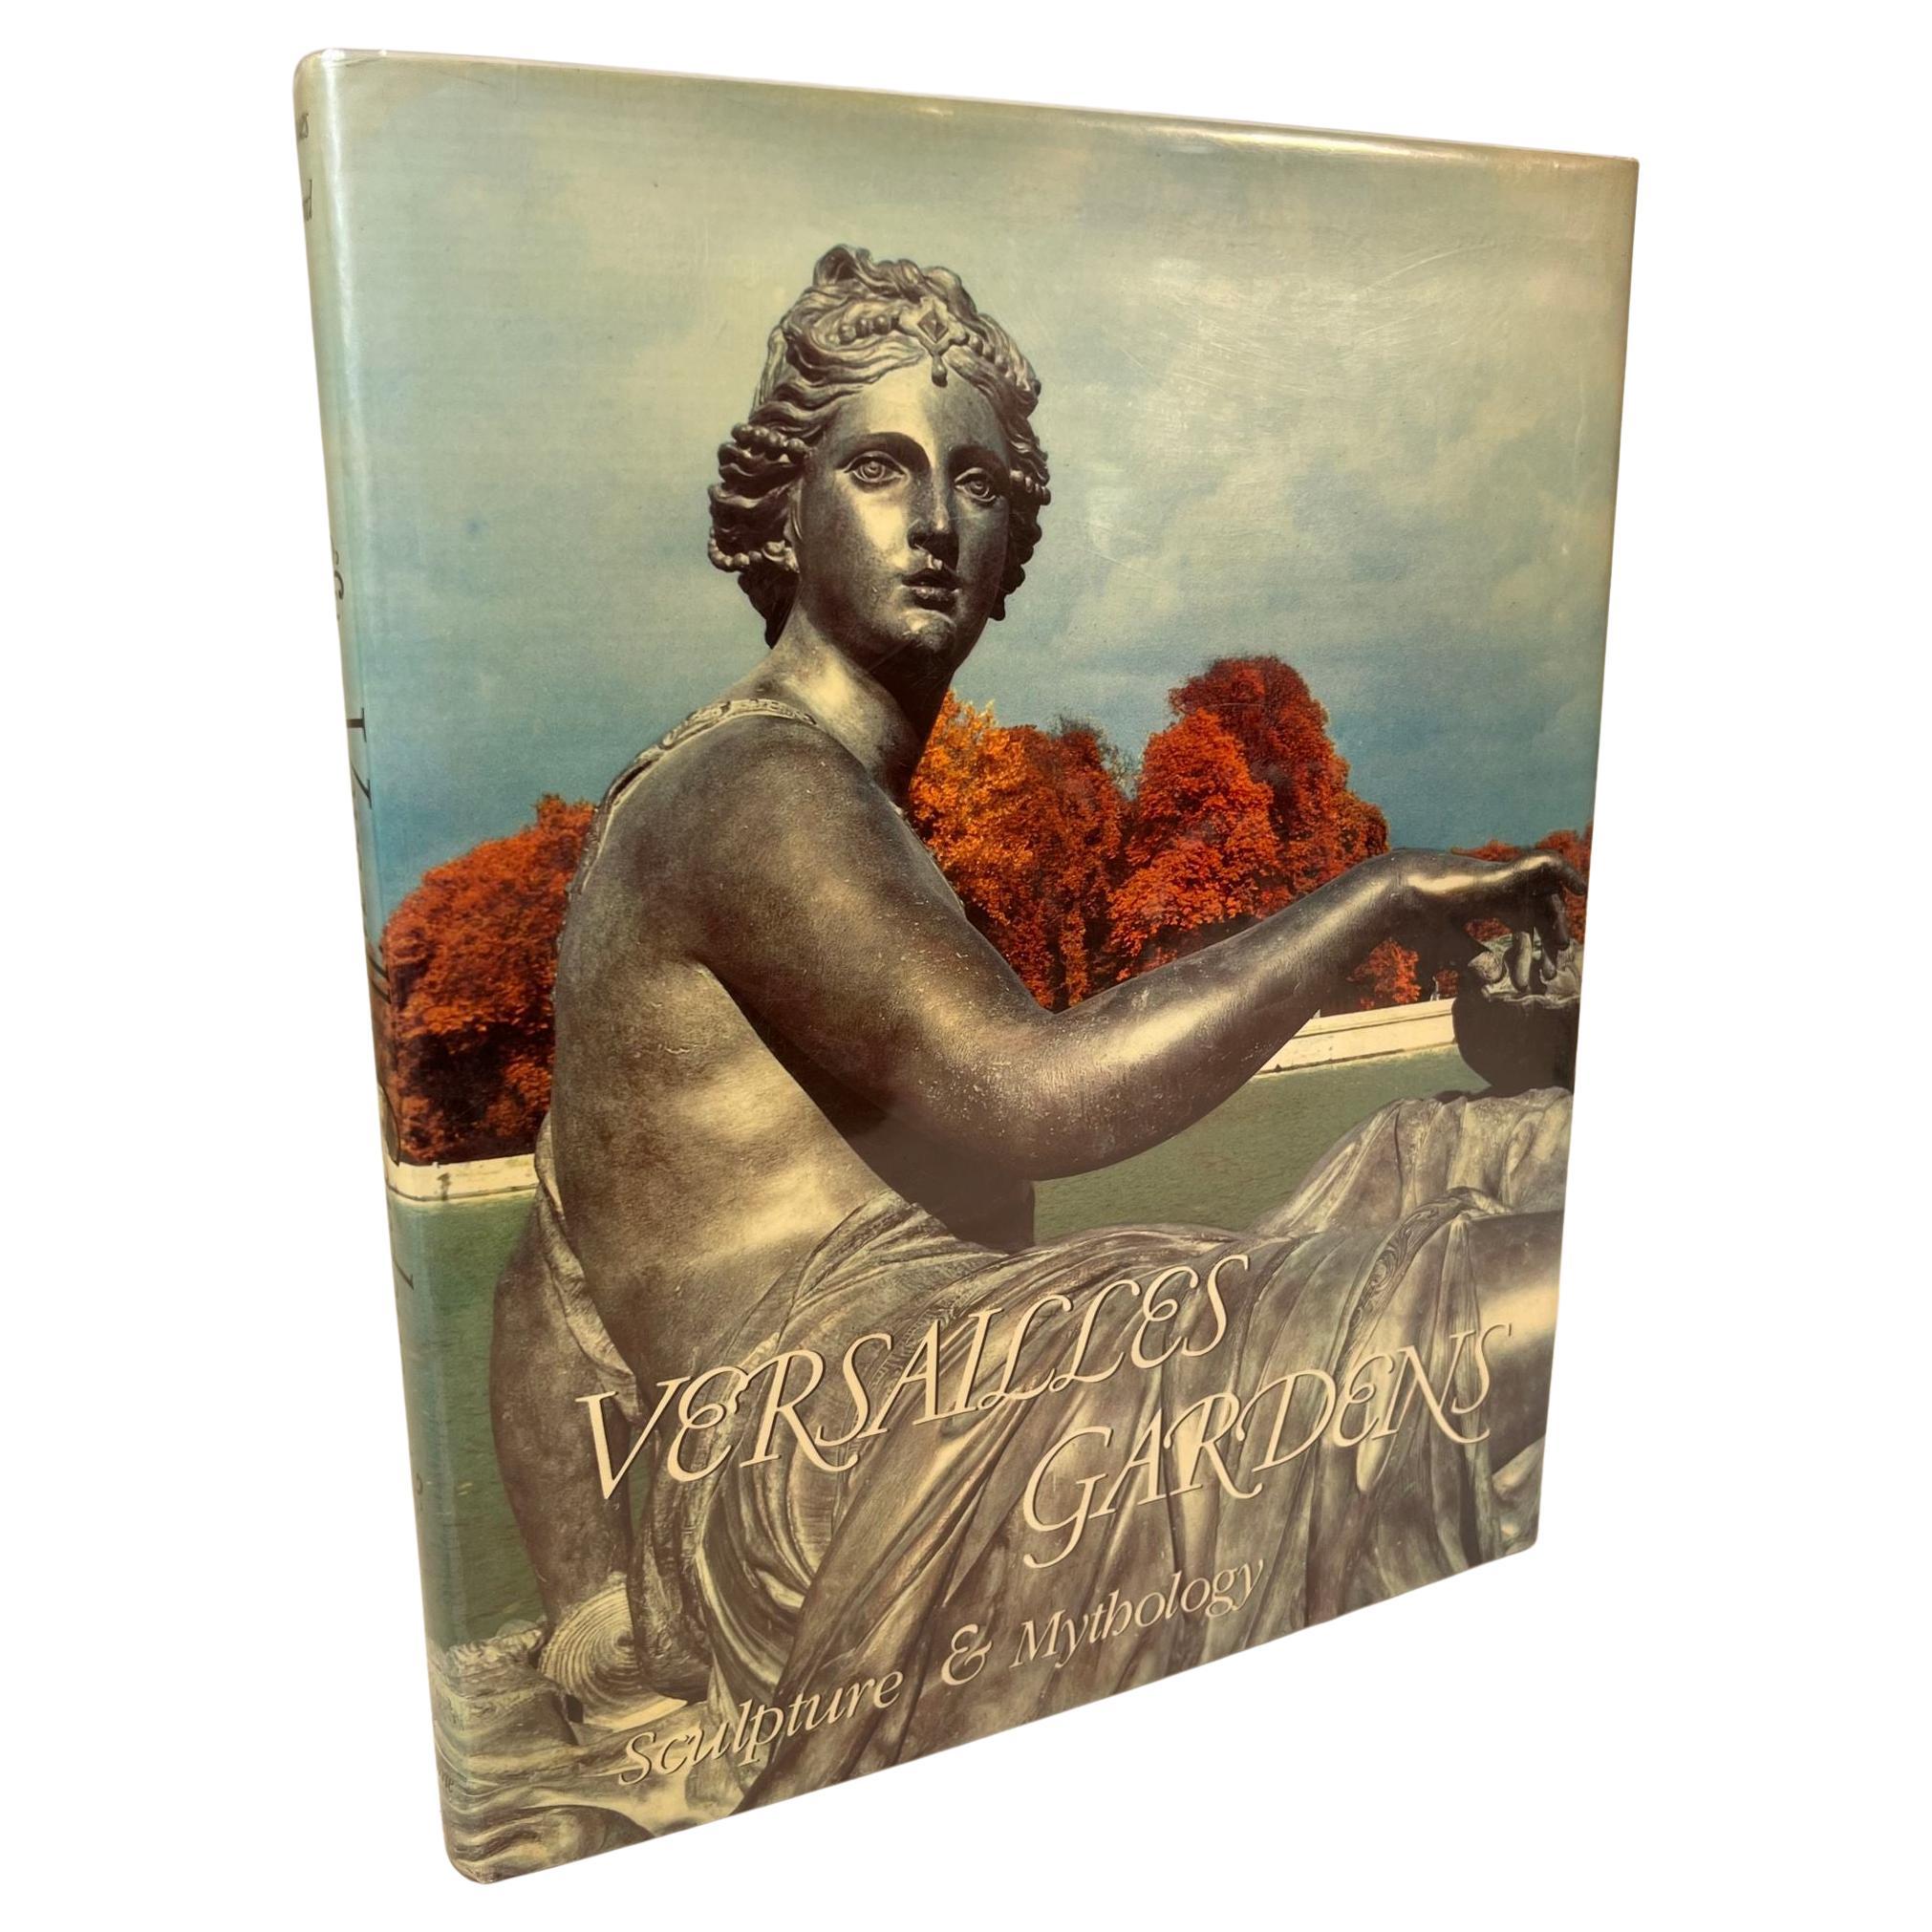 Livre « Versailles Gardens Sculpture And Mythology » de Jacques Girard, 1ère édition, 1985